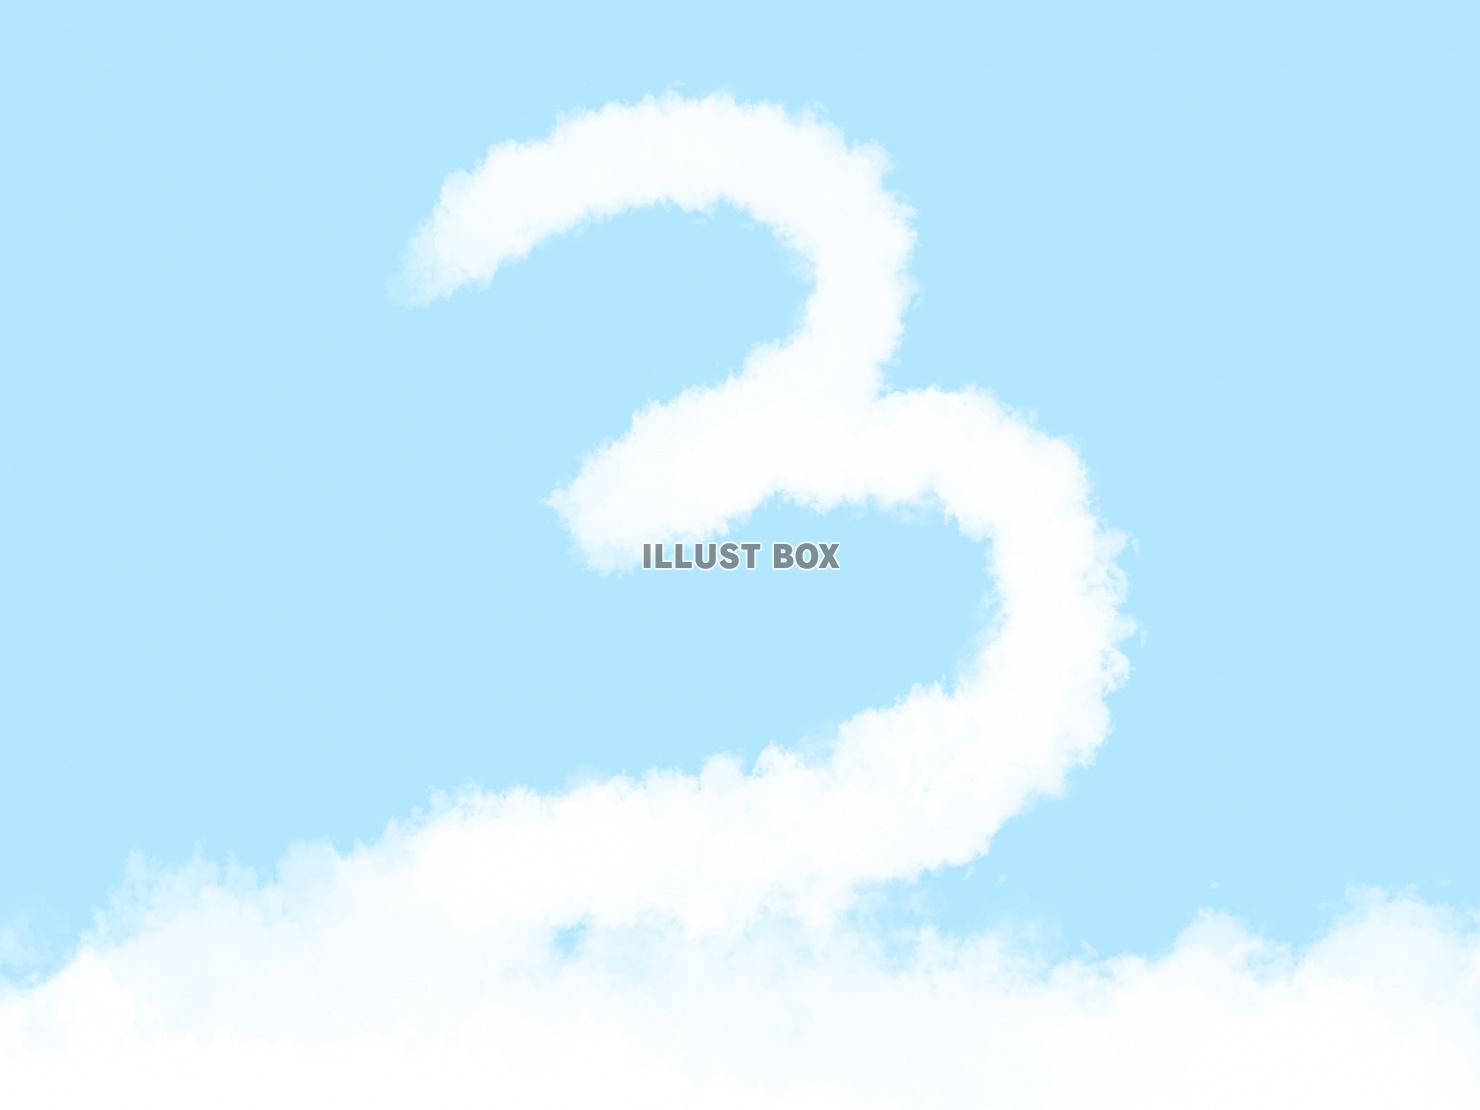 無料イラスト 絵本風の可愛い雲の数字 3 の文字入りの空